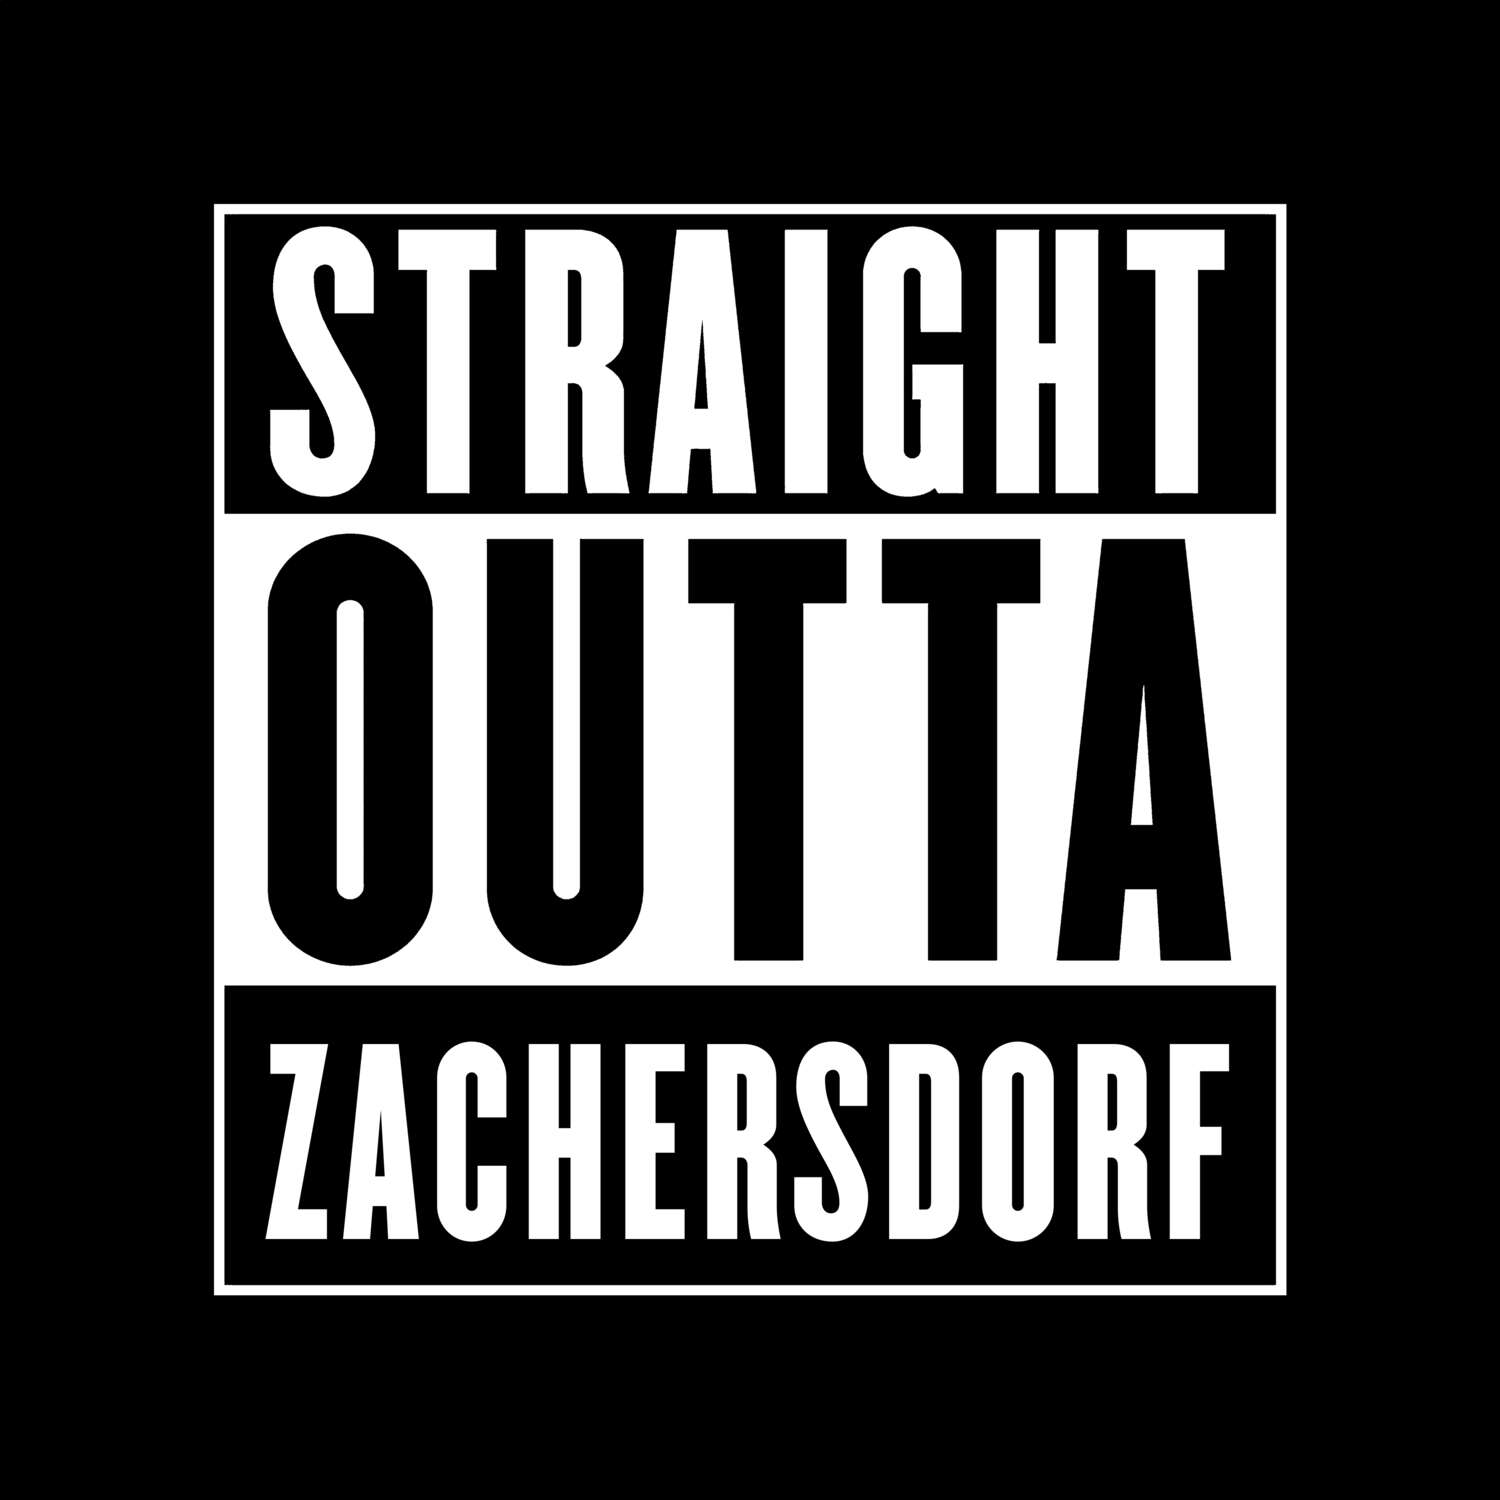 Zachersdorf T-Shirt »Straight Outta«